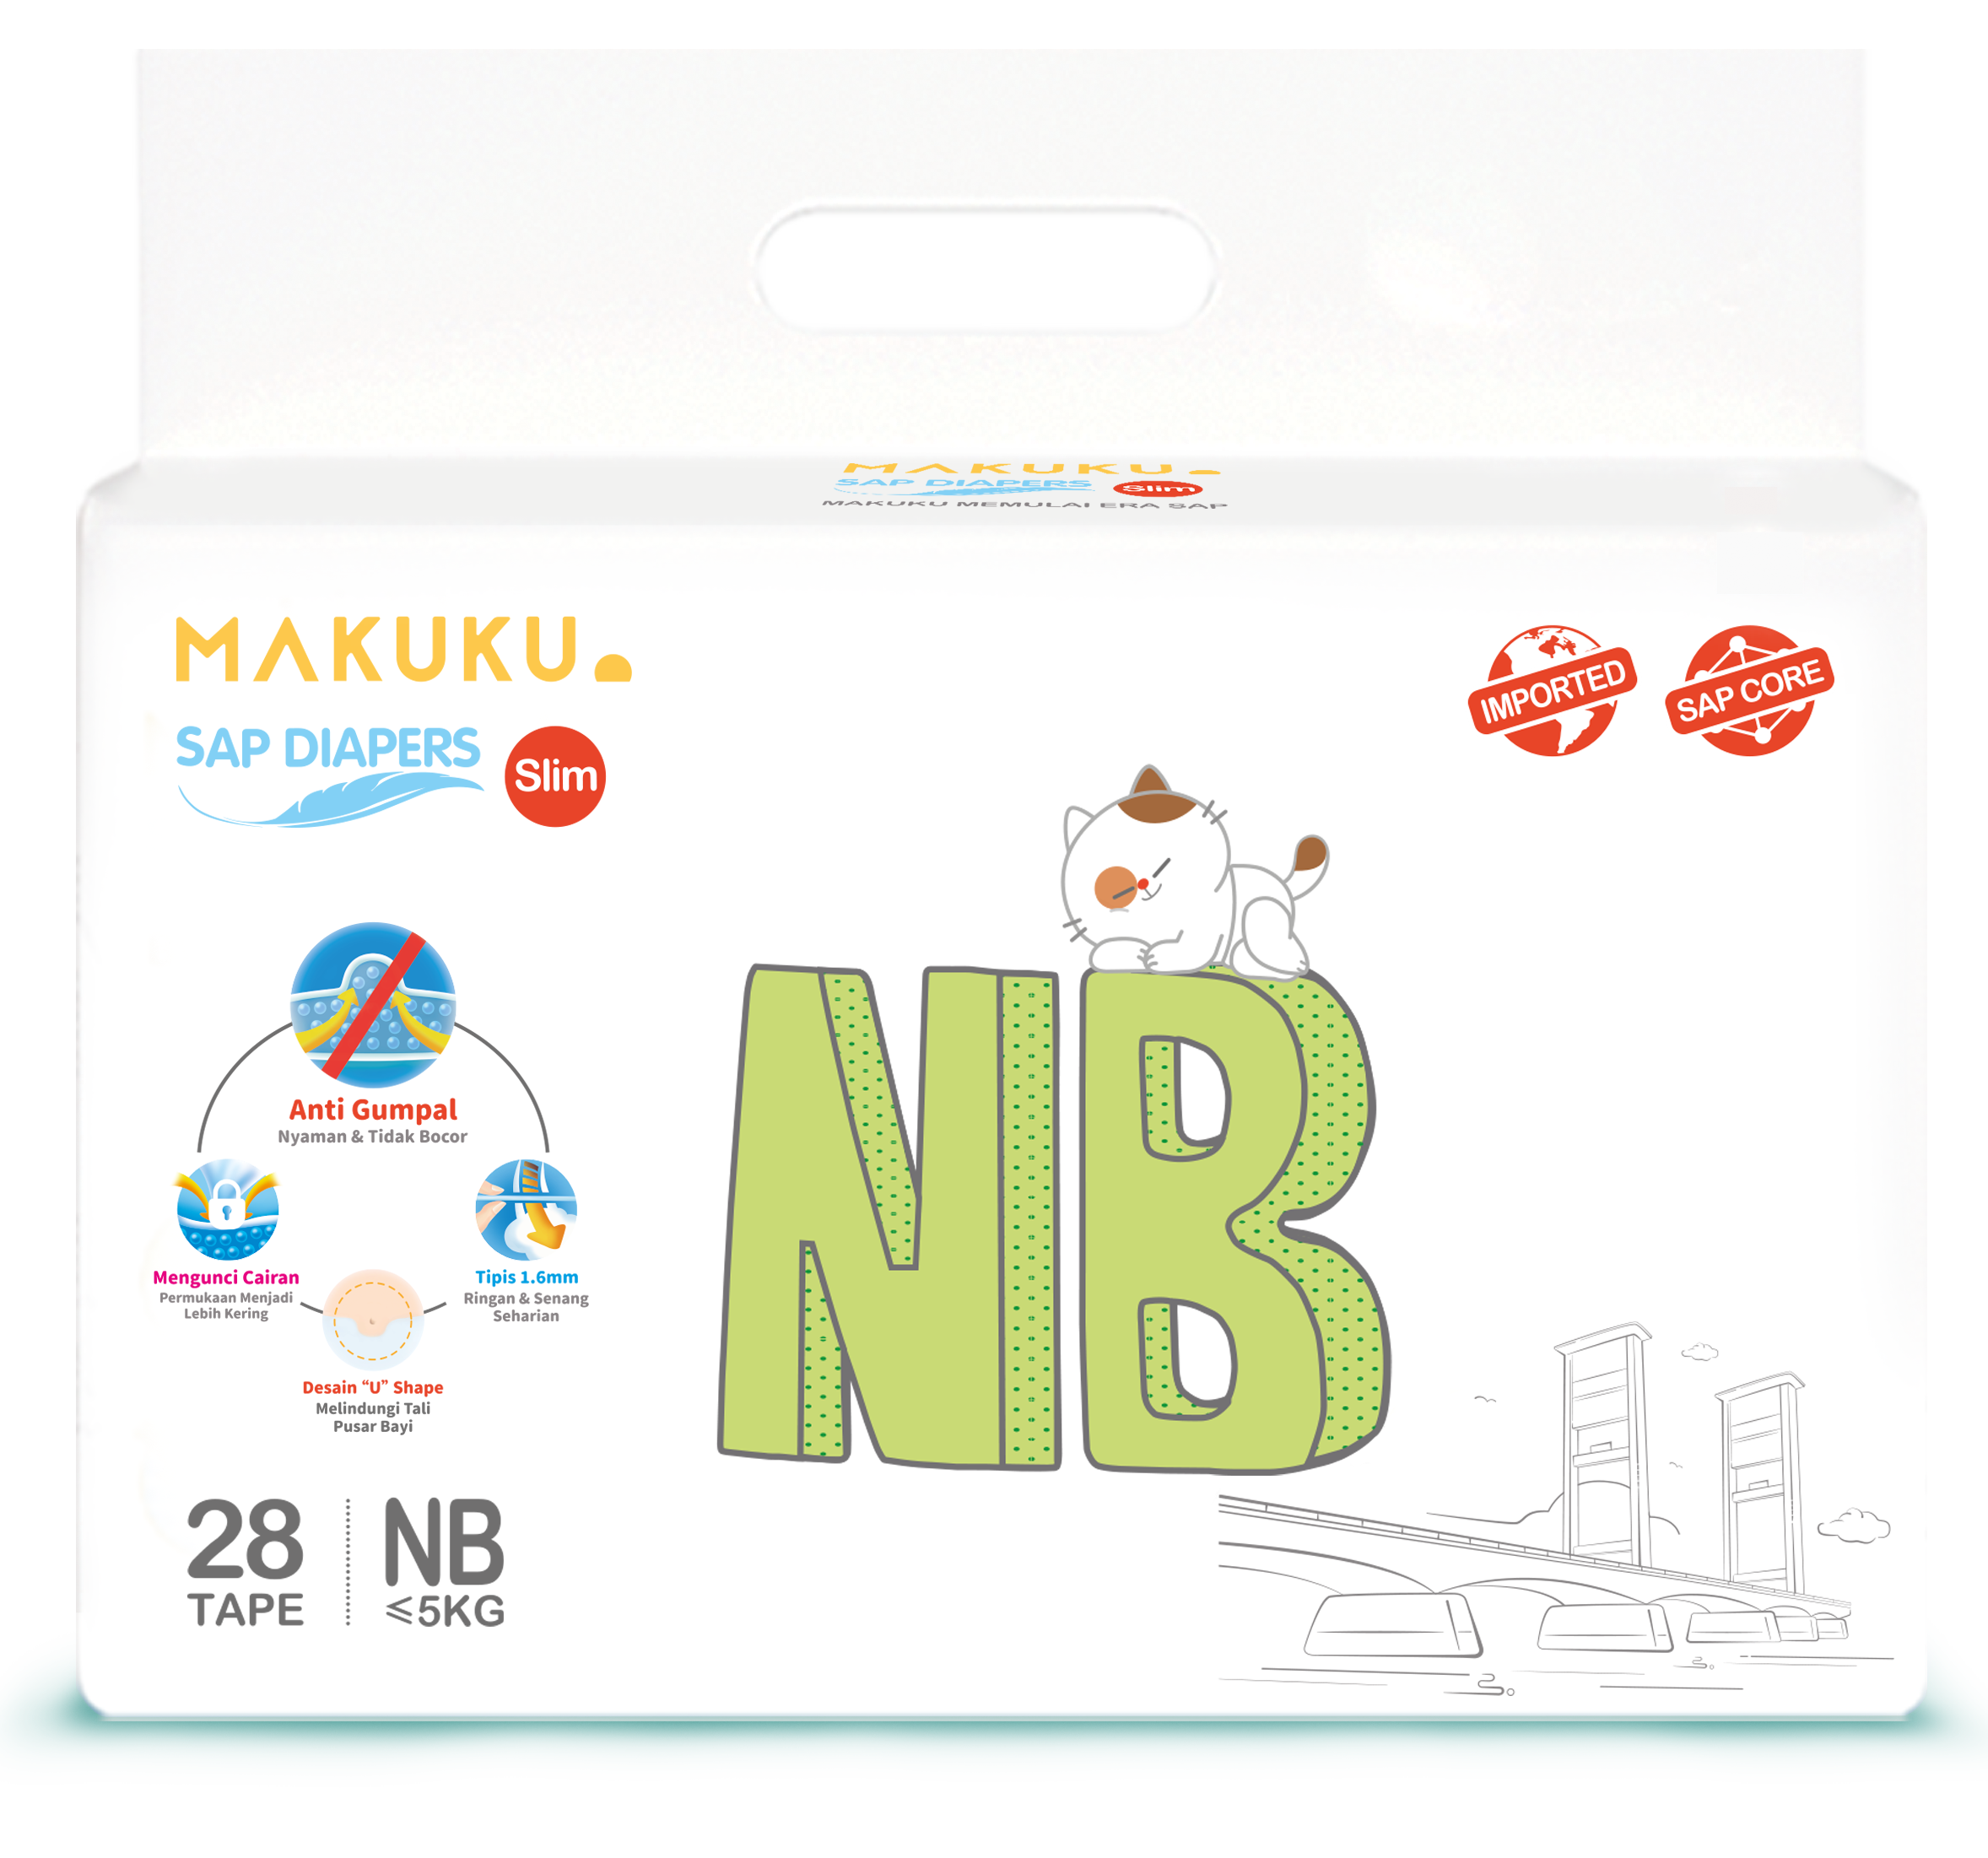 MAKUKU SAP Diapers Slim NB尺寸包装图片